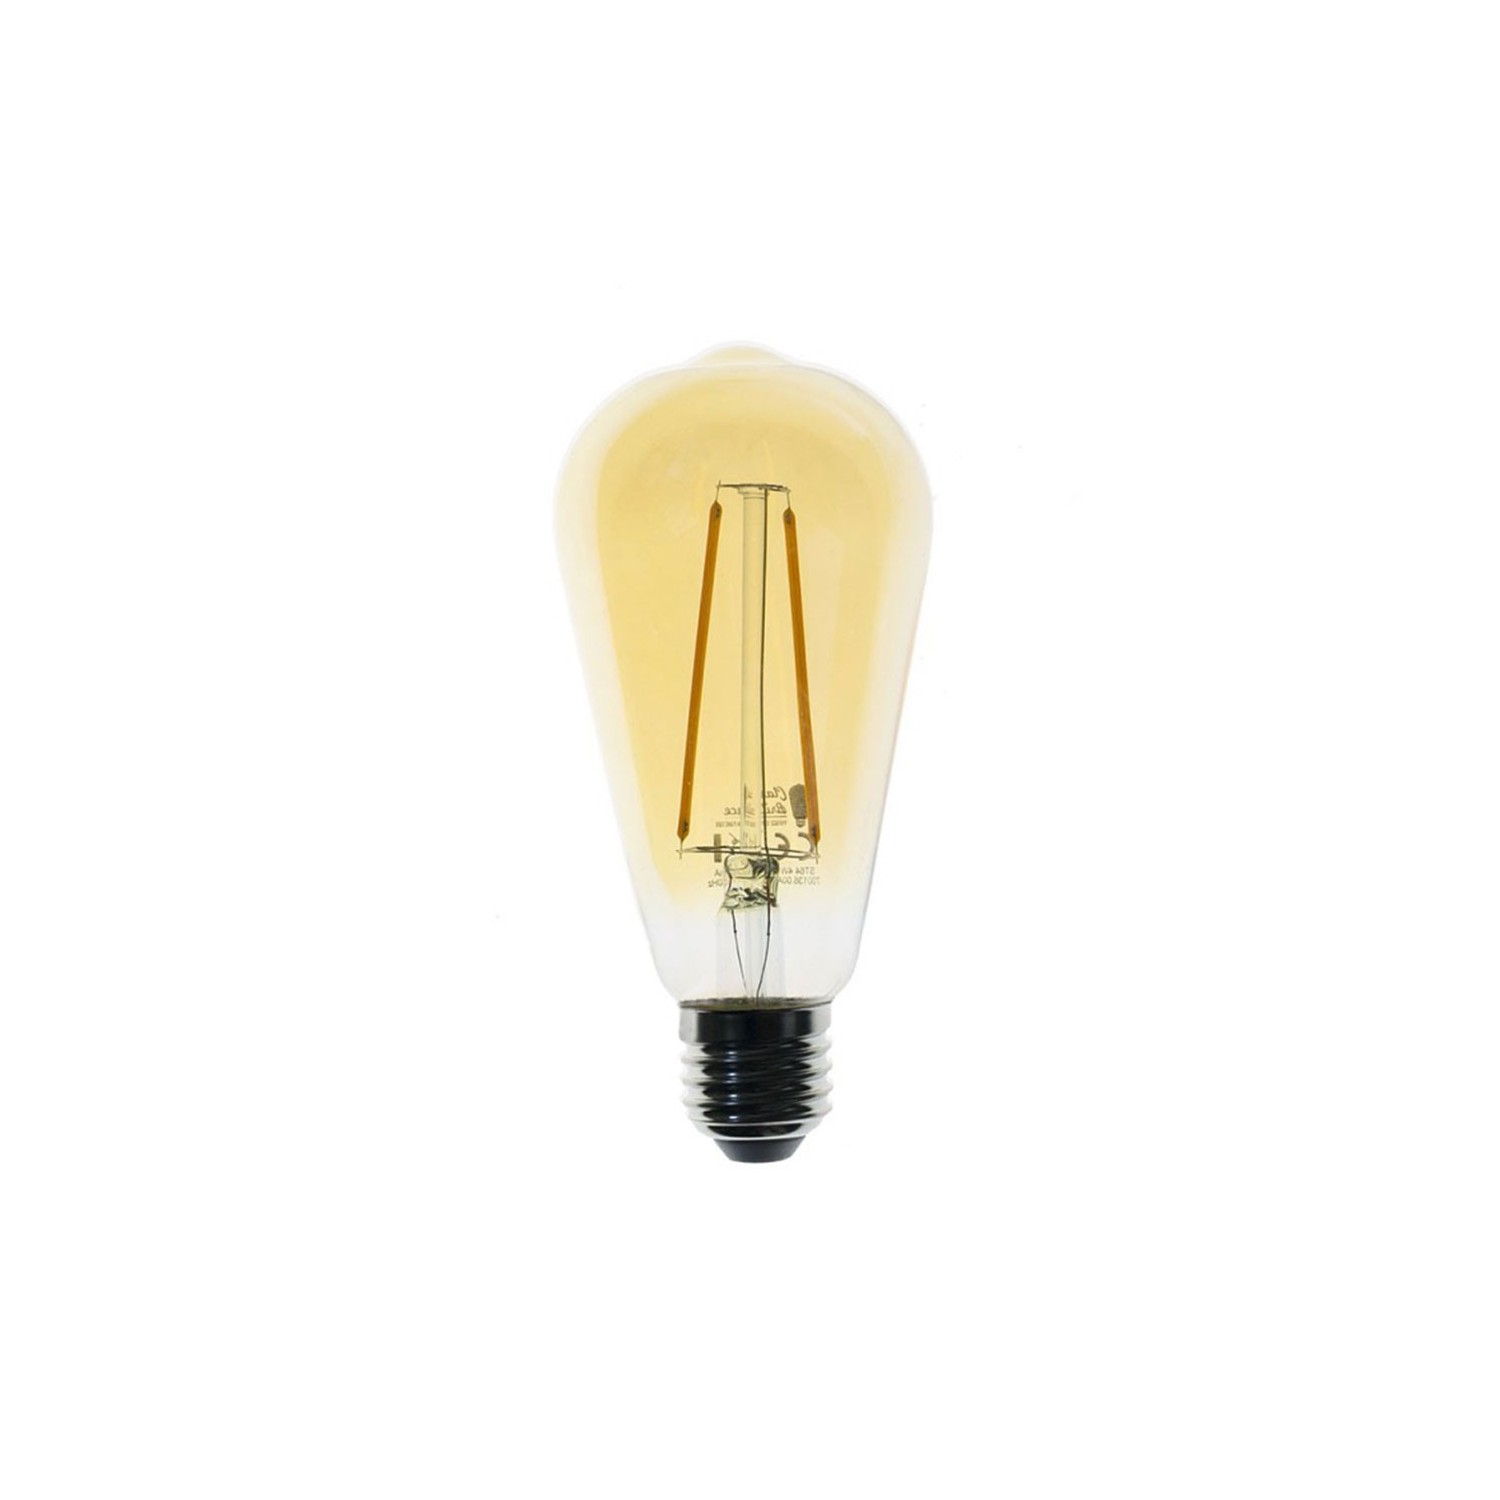 Bombillo dorado atenuable Edison ST64 LED de 4W filamento recto 2200ºK - Dimerizable LCO008